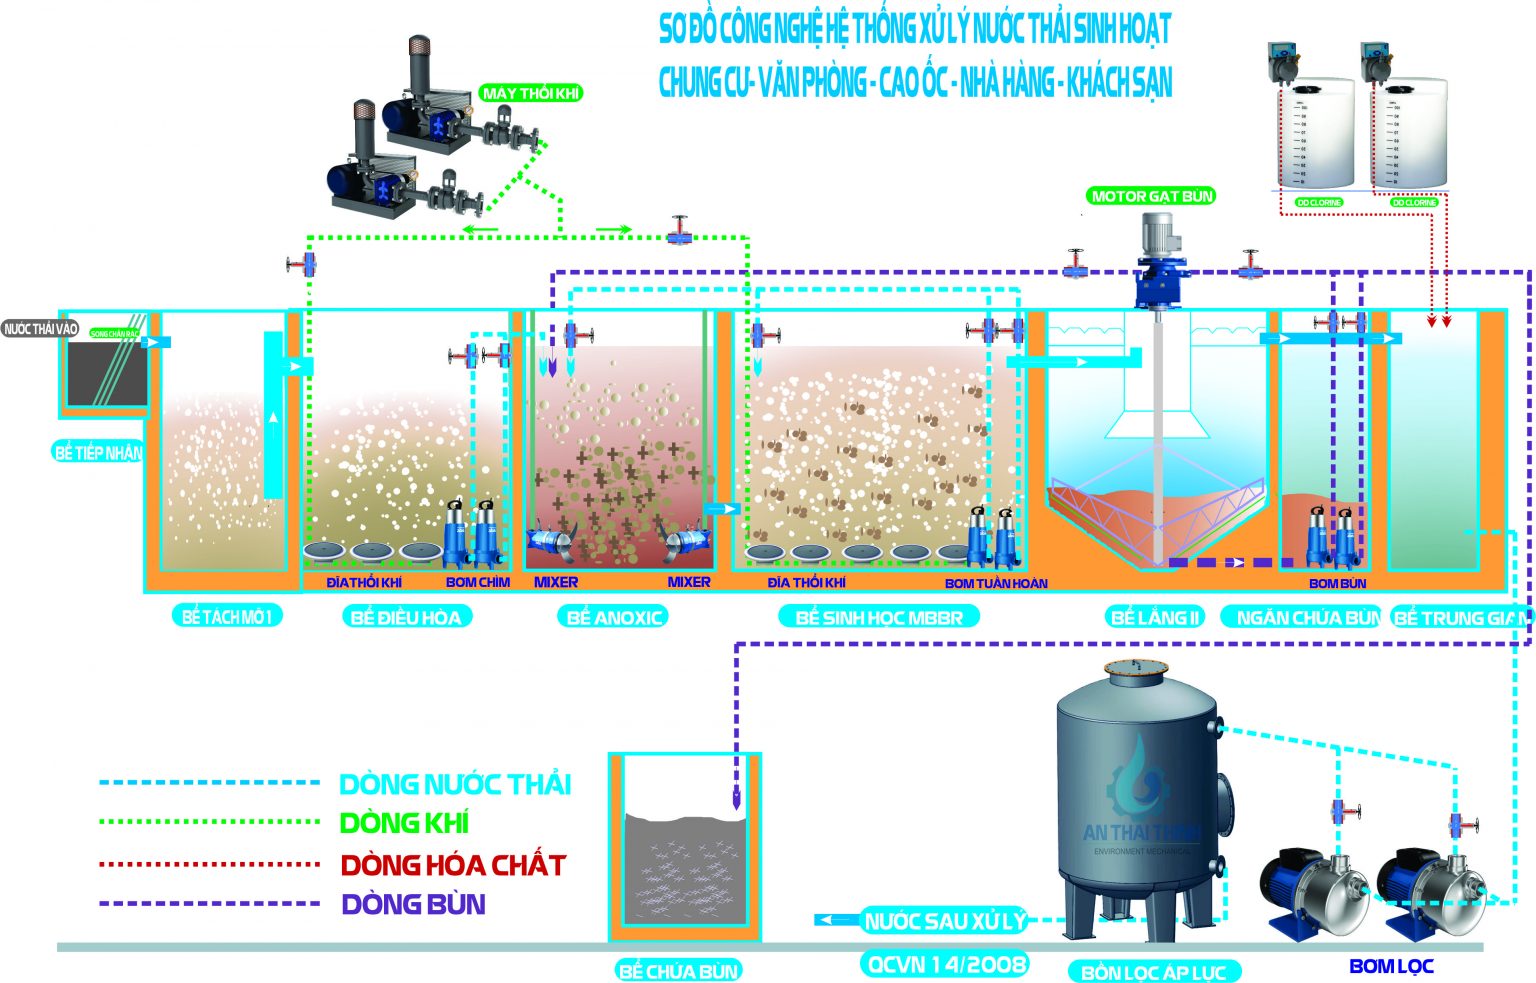 KASAMA: Chuyên cung cấp Máy lọc nước RO và Máy lọc nước Nano chất lượng cao